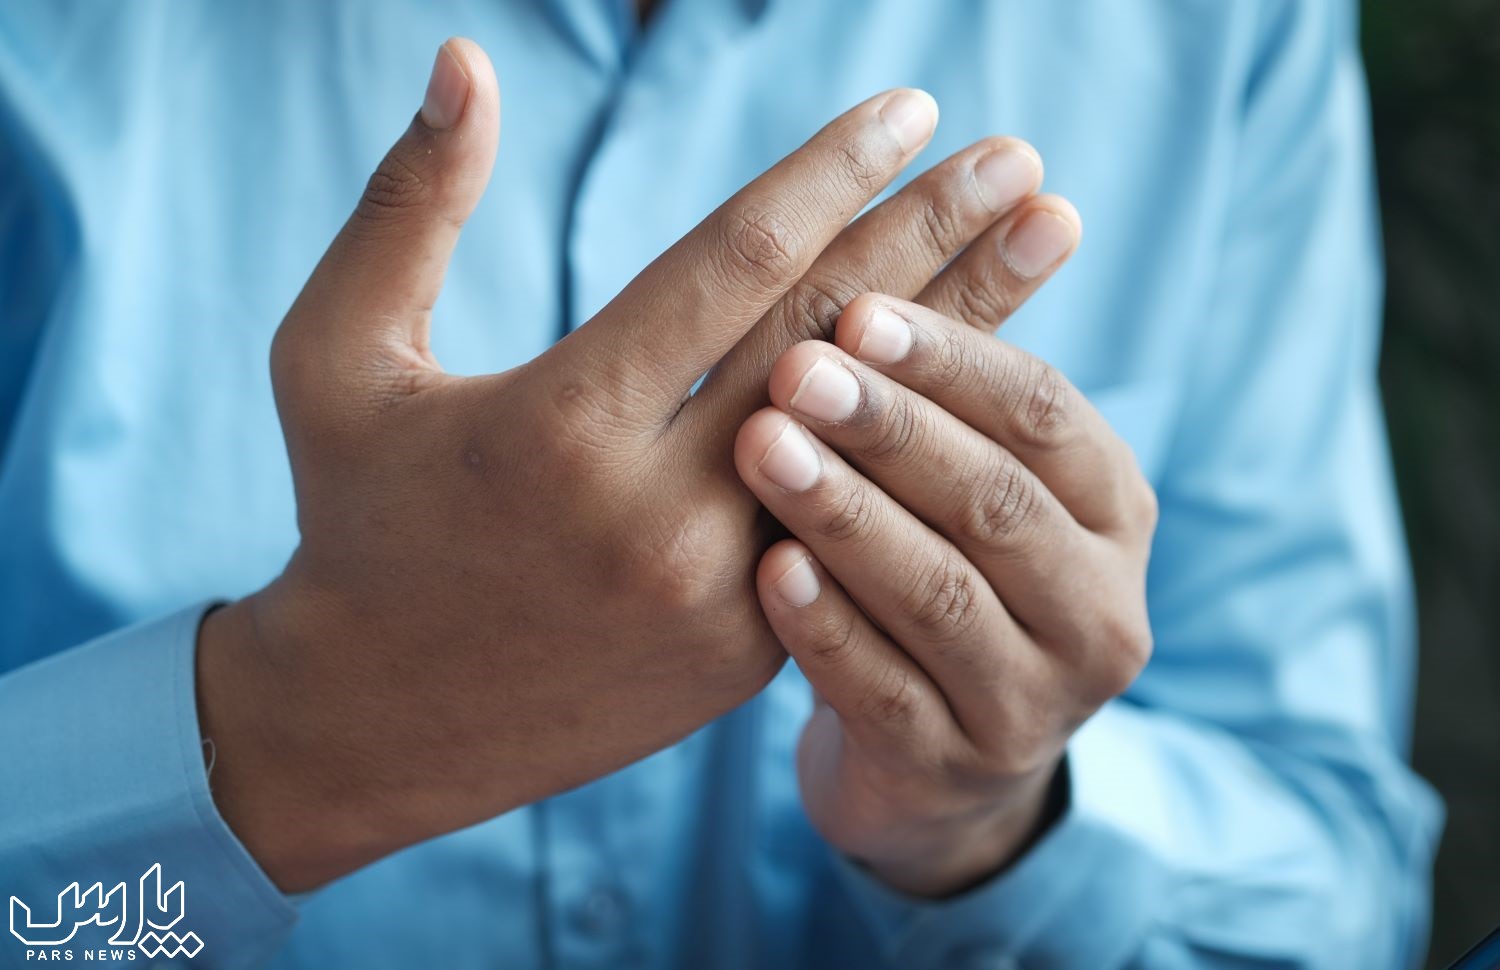 روماتیسم انگشت - درمان روماتیسم مفصلی